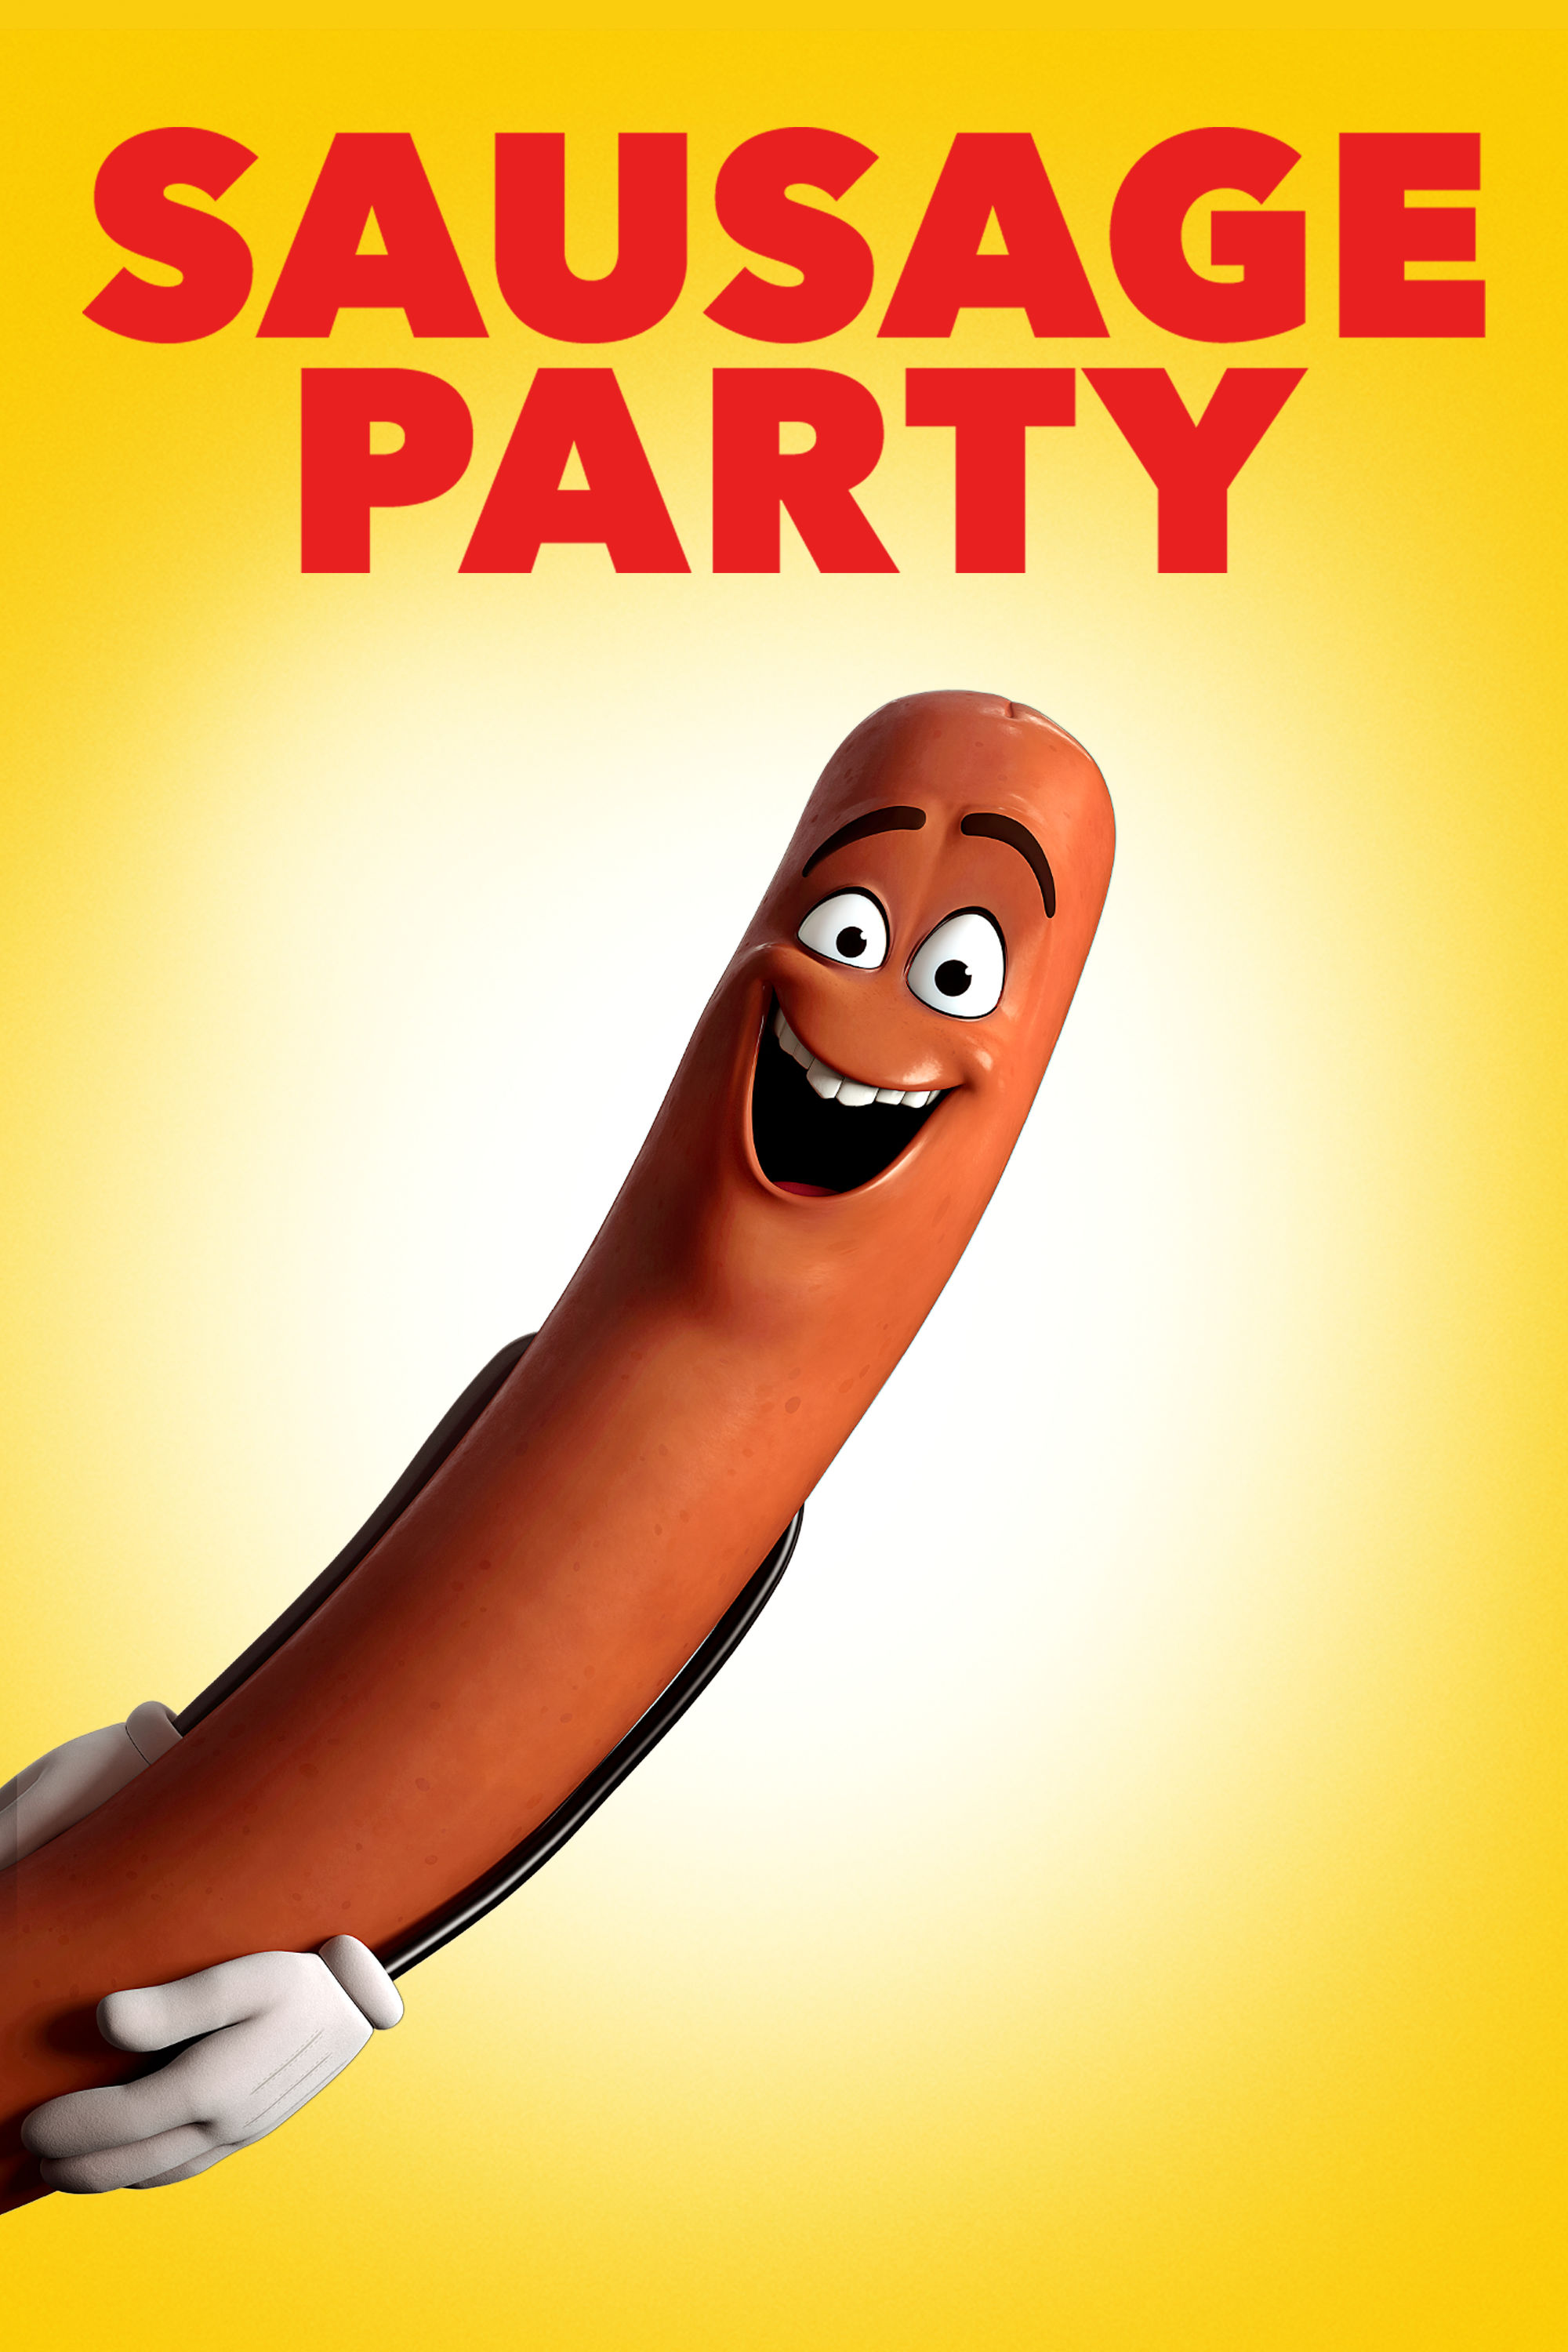 Sausage Party Film Analysis